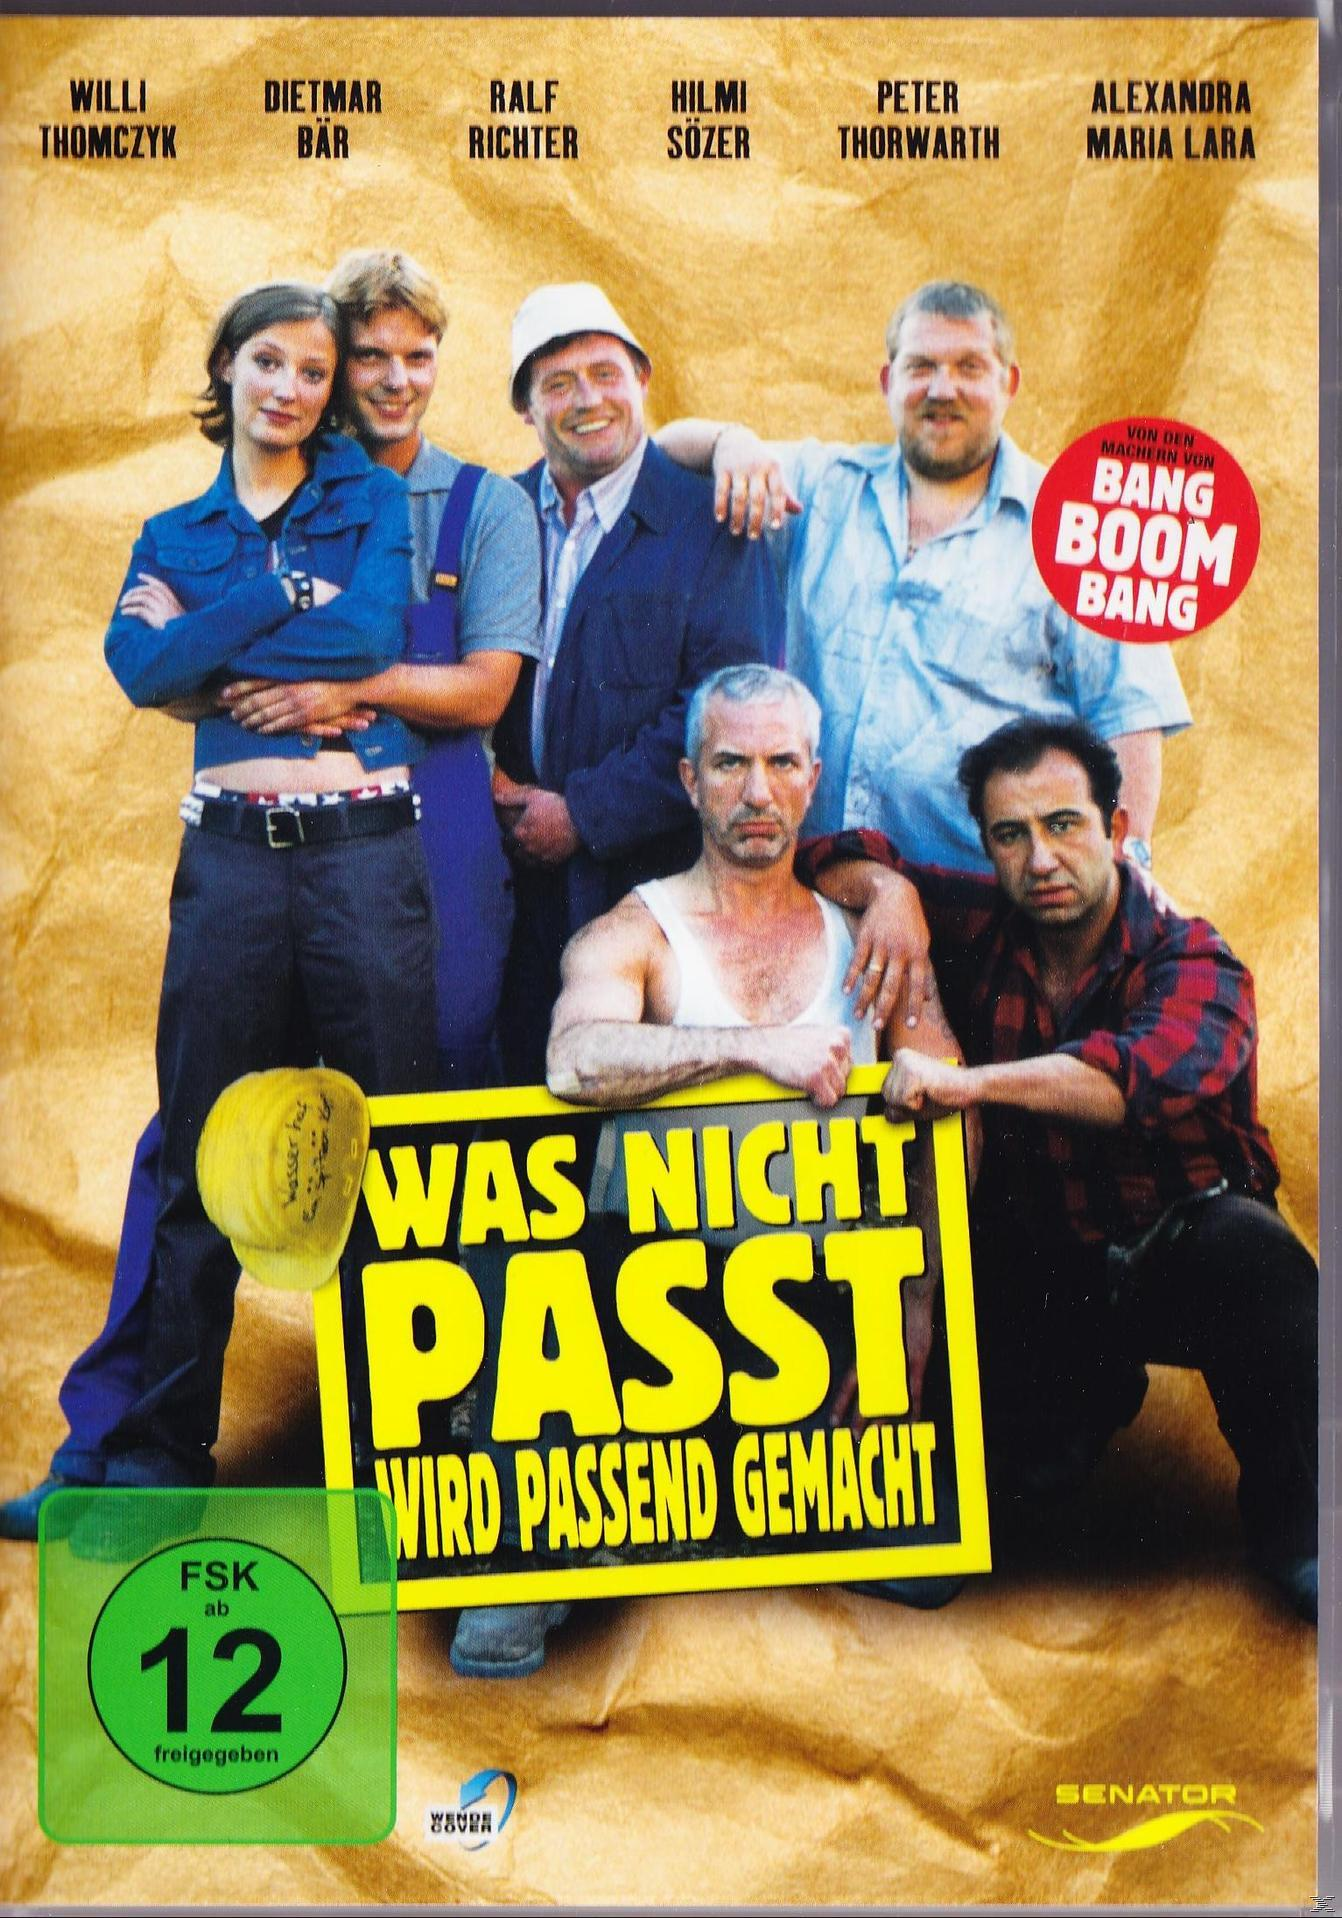 GEMACHT PASSEND NICHT PASST, WAS WIRD DVD